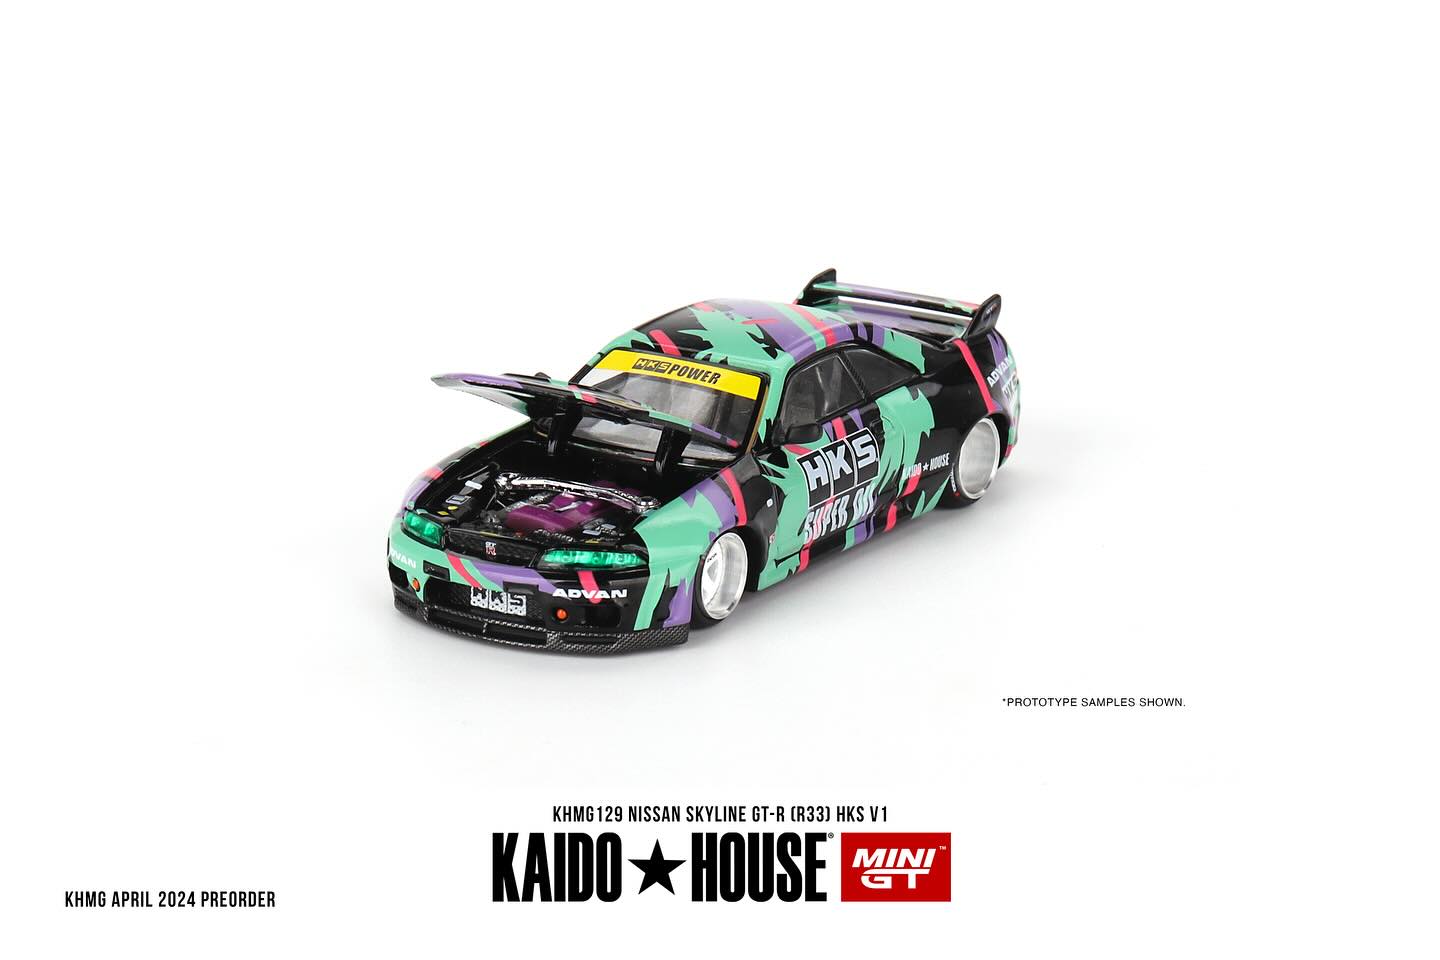 Mini GT x Kaido House Nissan Skyline GT-R (R33) HKS V1